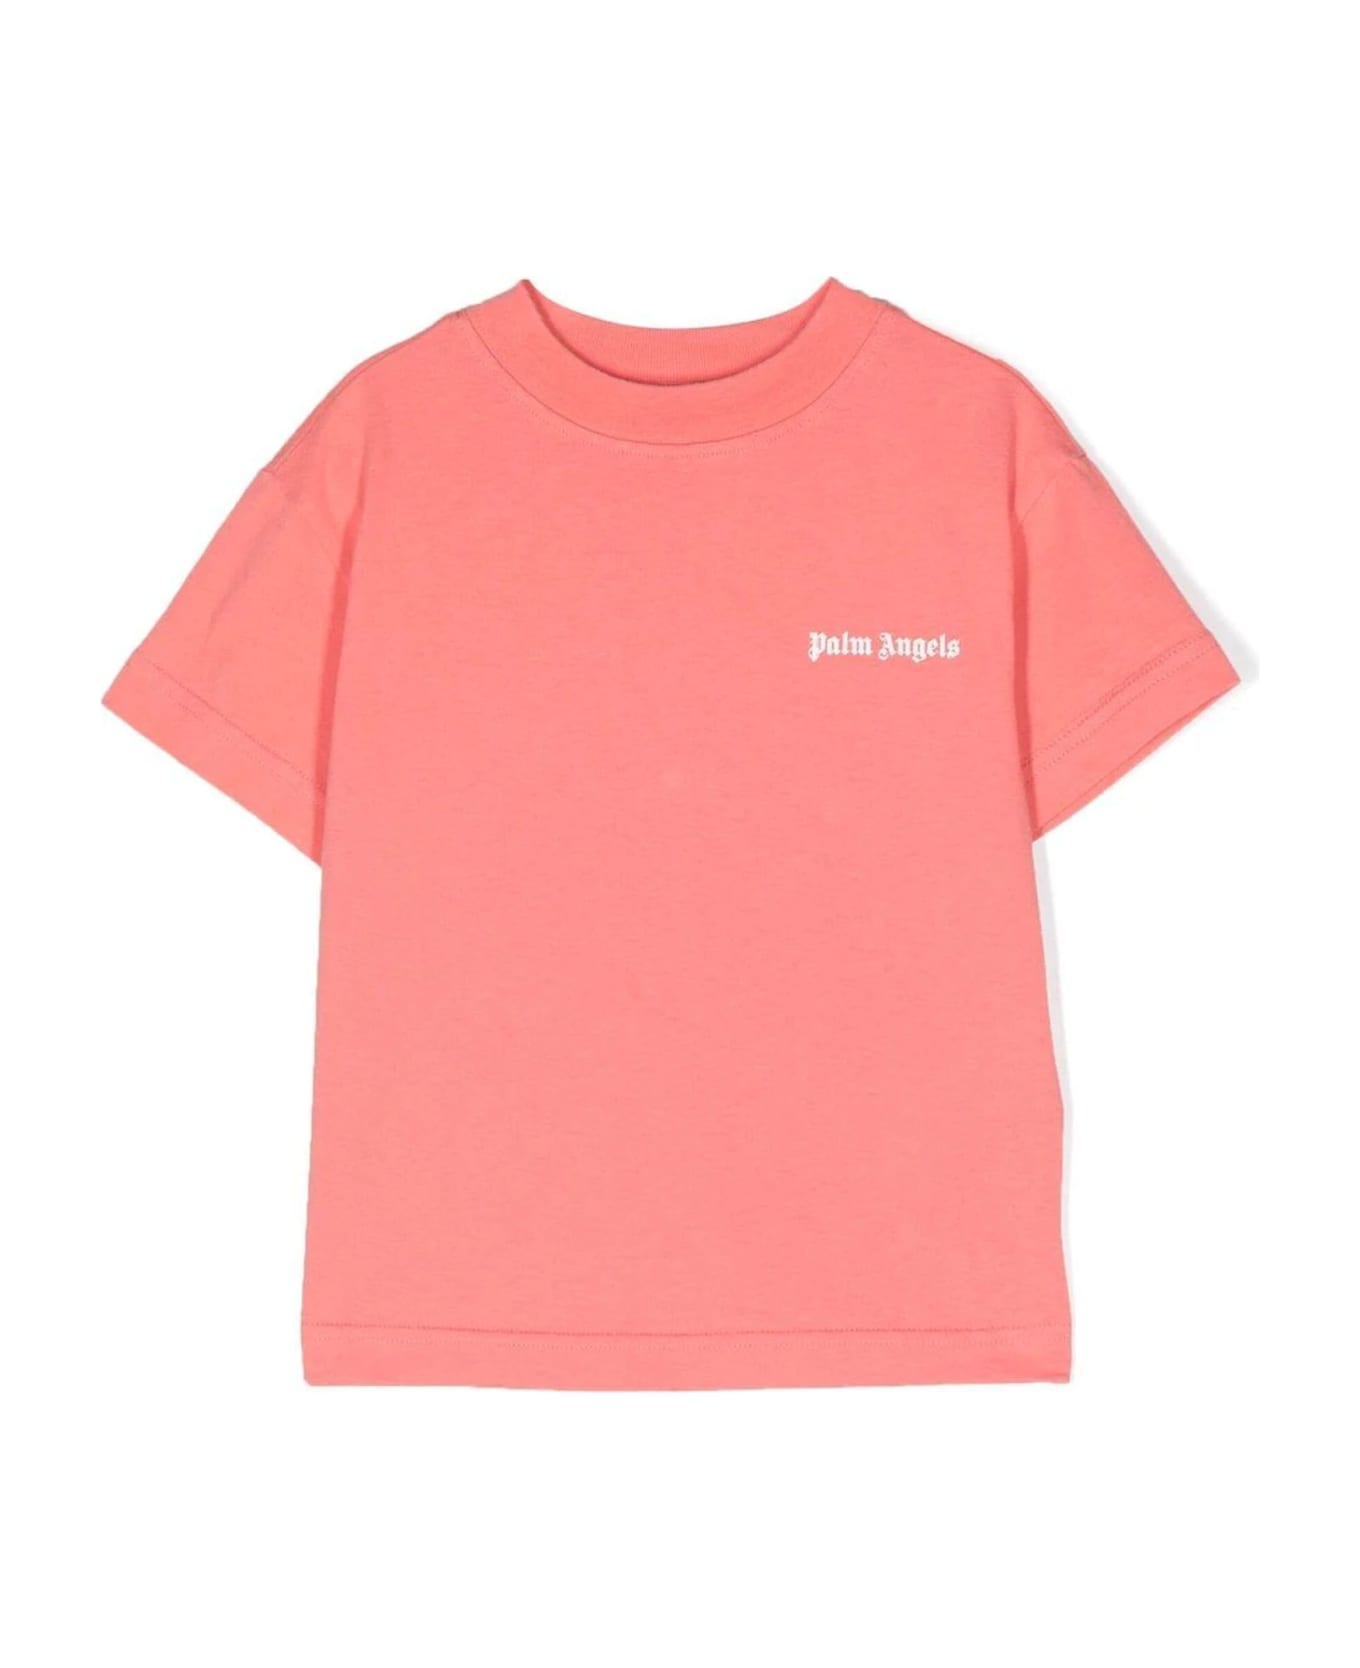 Palm Angels Cotton Set Tshirt - Rosa